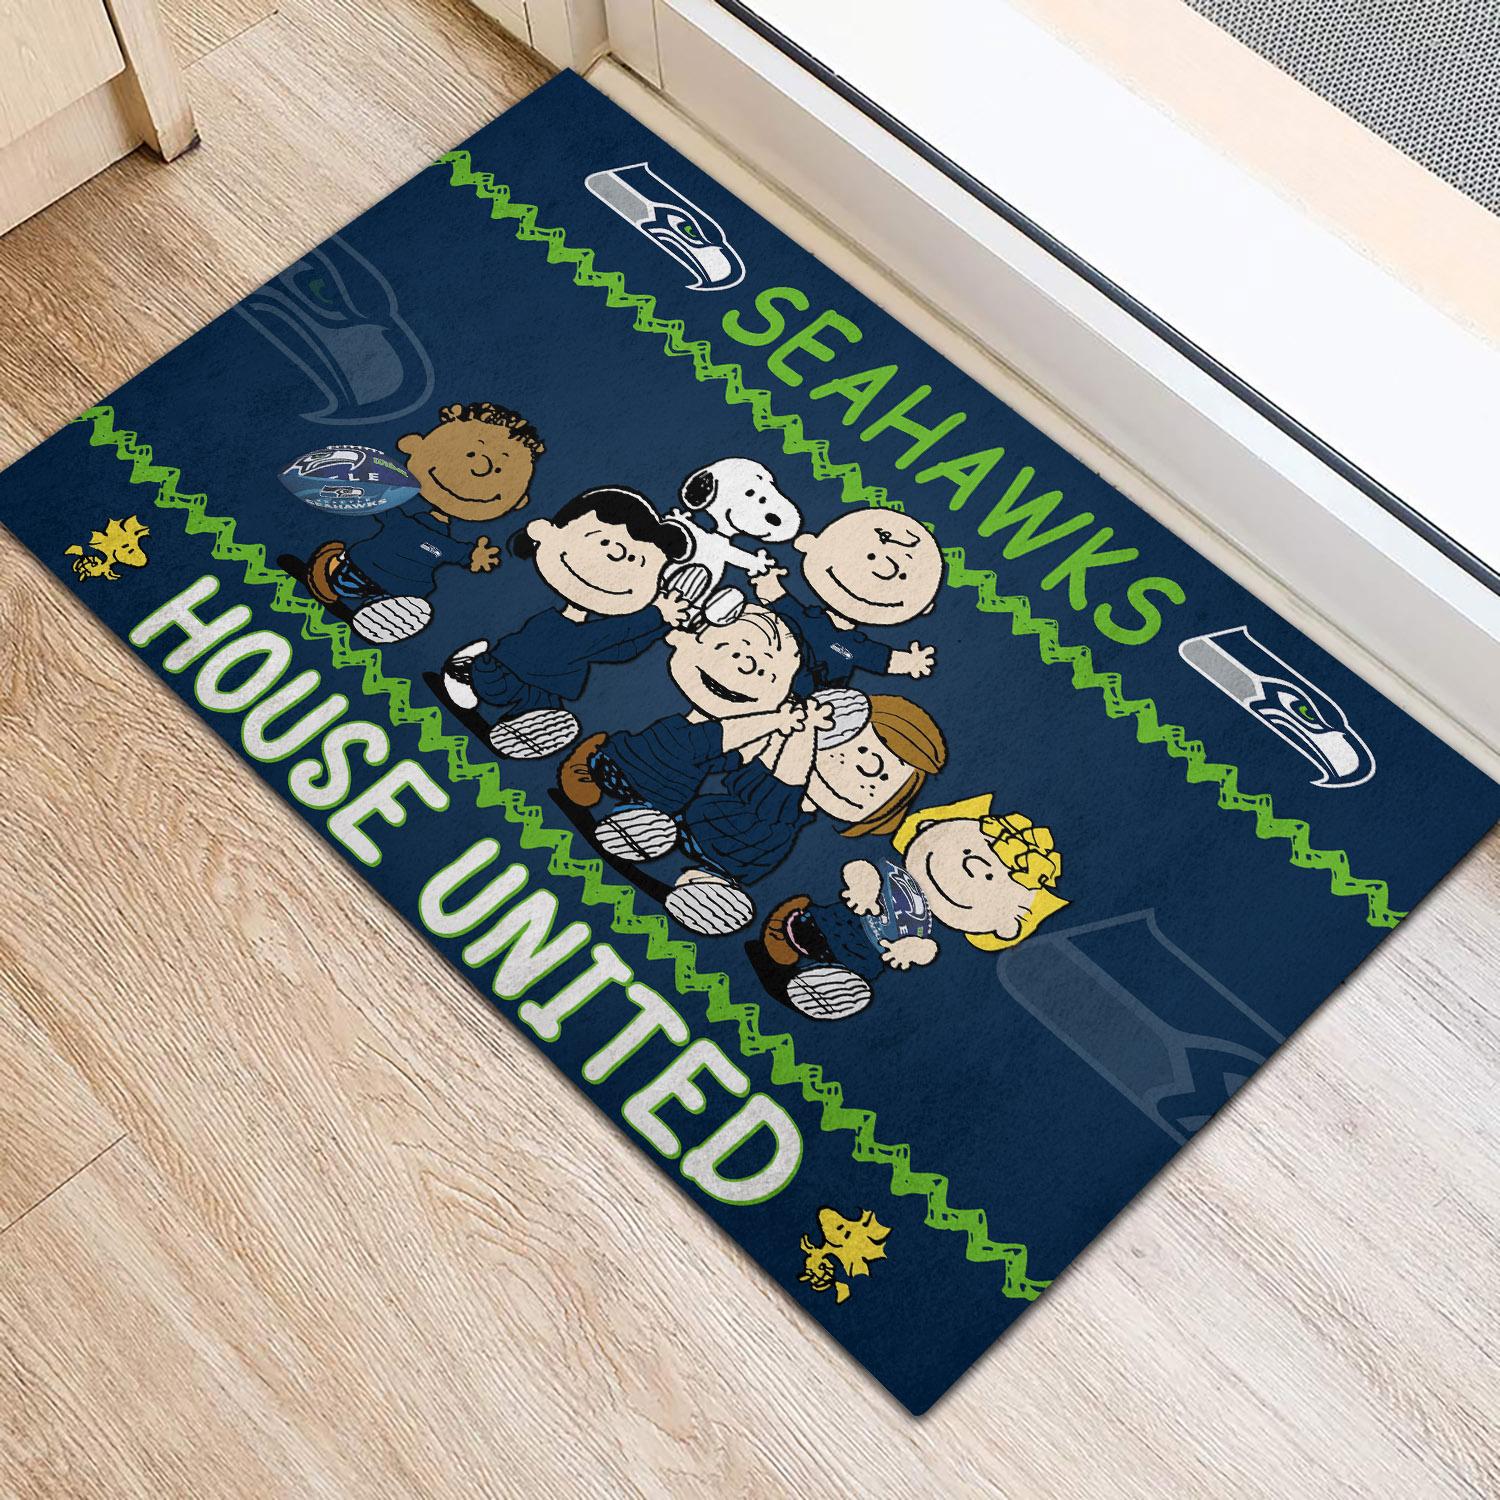 Seattle Seahawks Peanuts House United Doormat